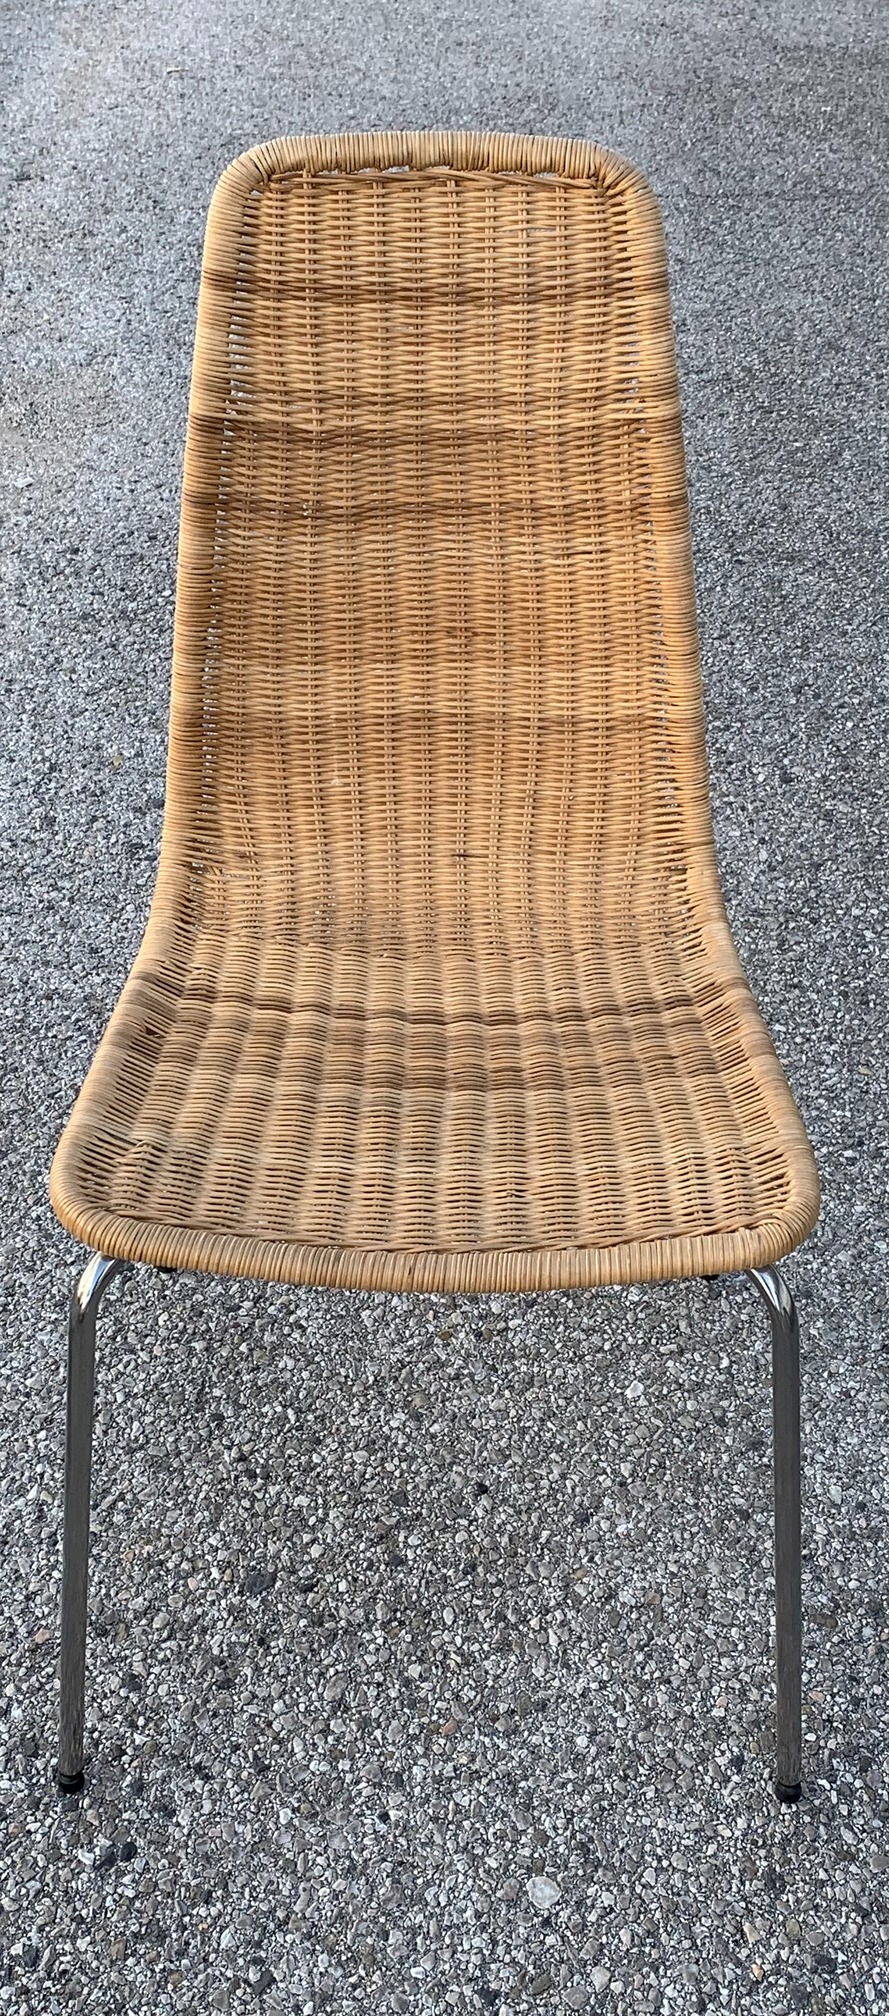 Riparazione sedie in midollino: restituisci l’originale bellezza alle tue sedie